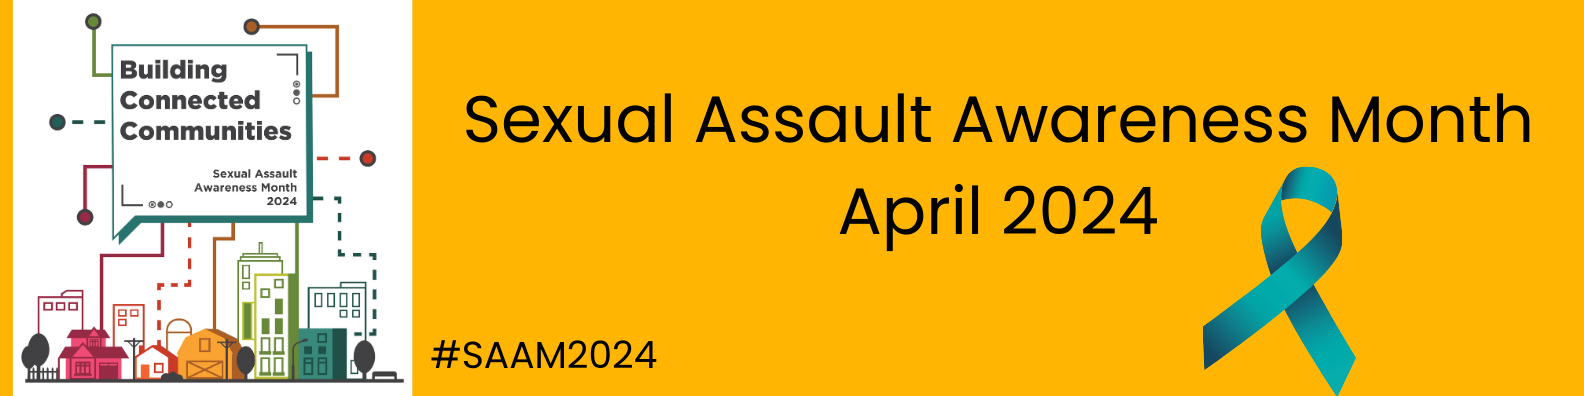 Sexual Assault Awareness Month begins April 1